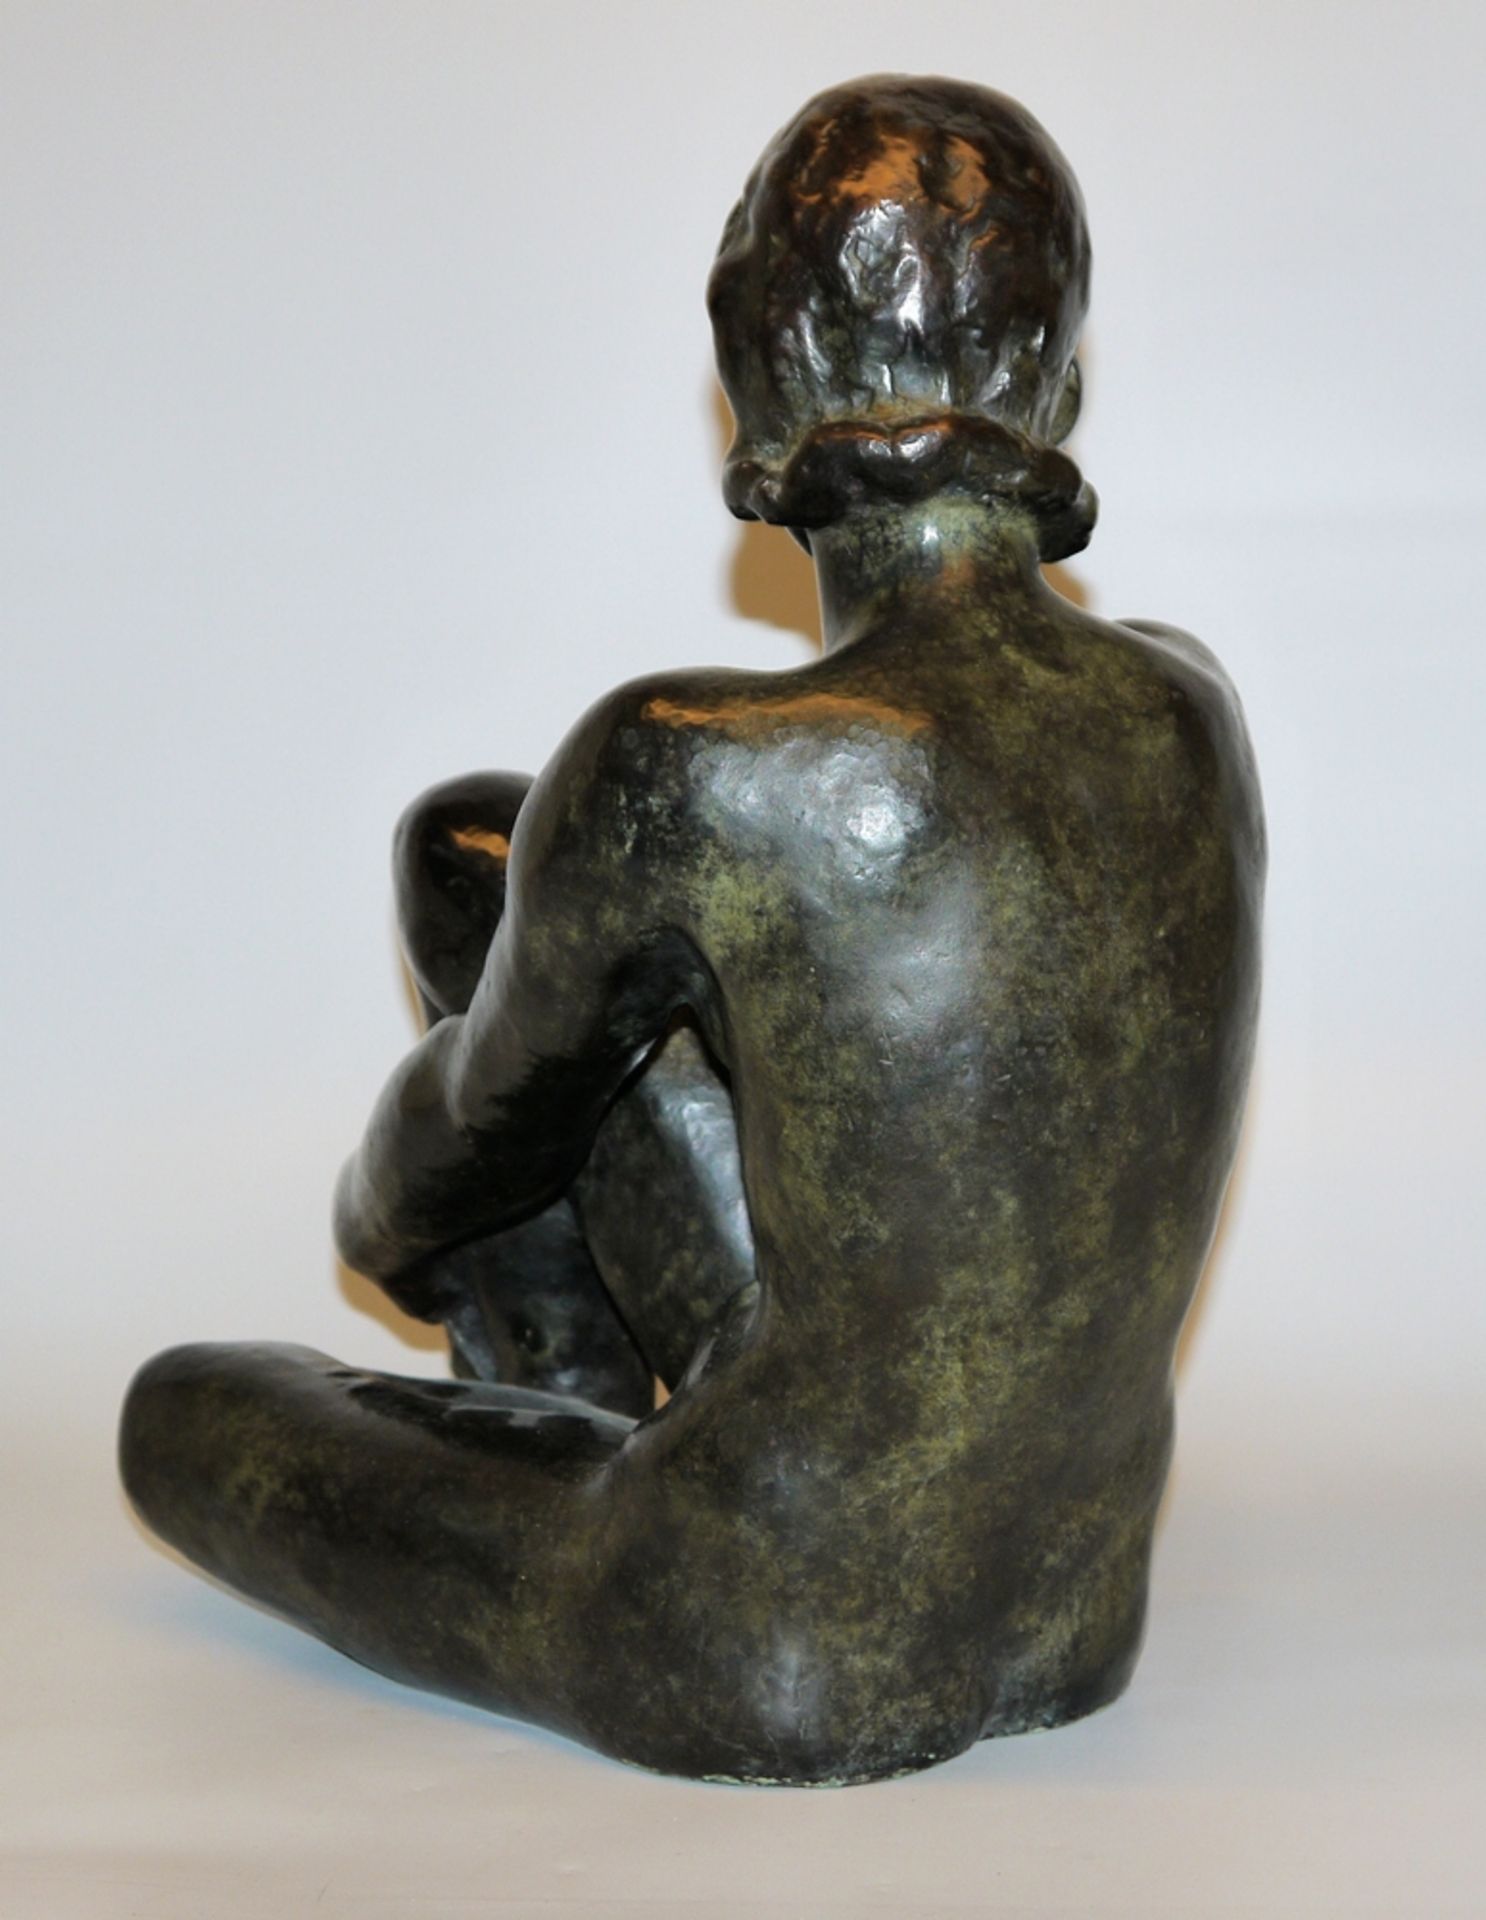 Fritz Klimsch, bronze sculpture "Kleine Träumende" circa 1947 with expert opinion - Image 2 of 3